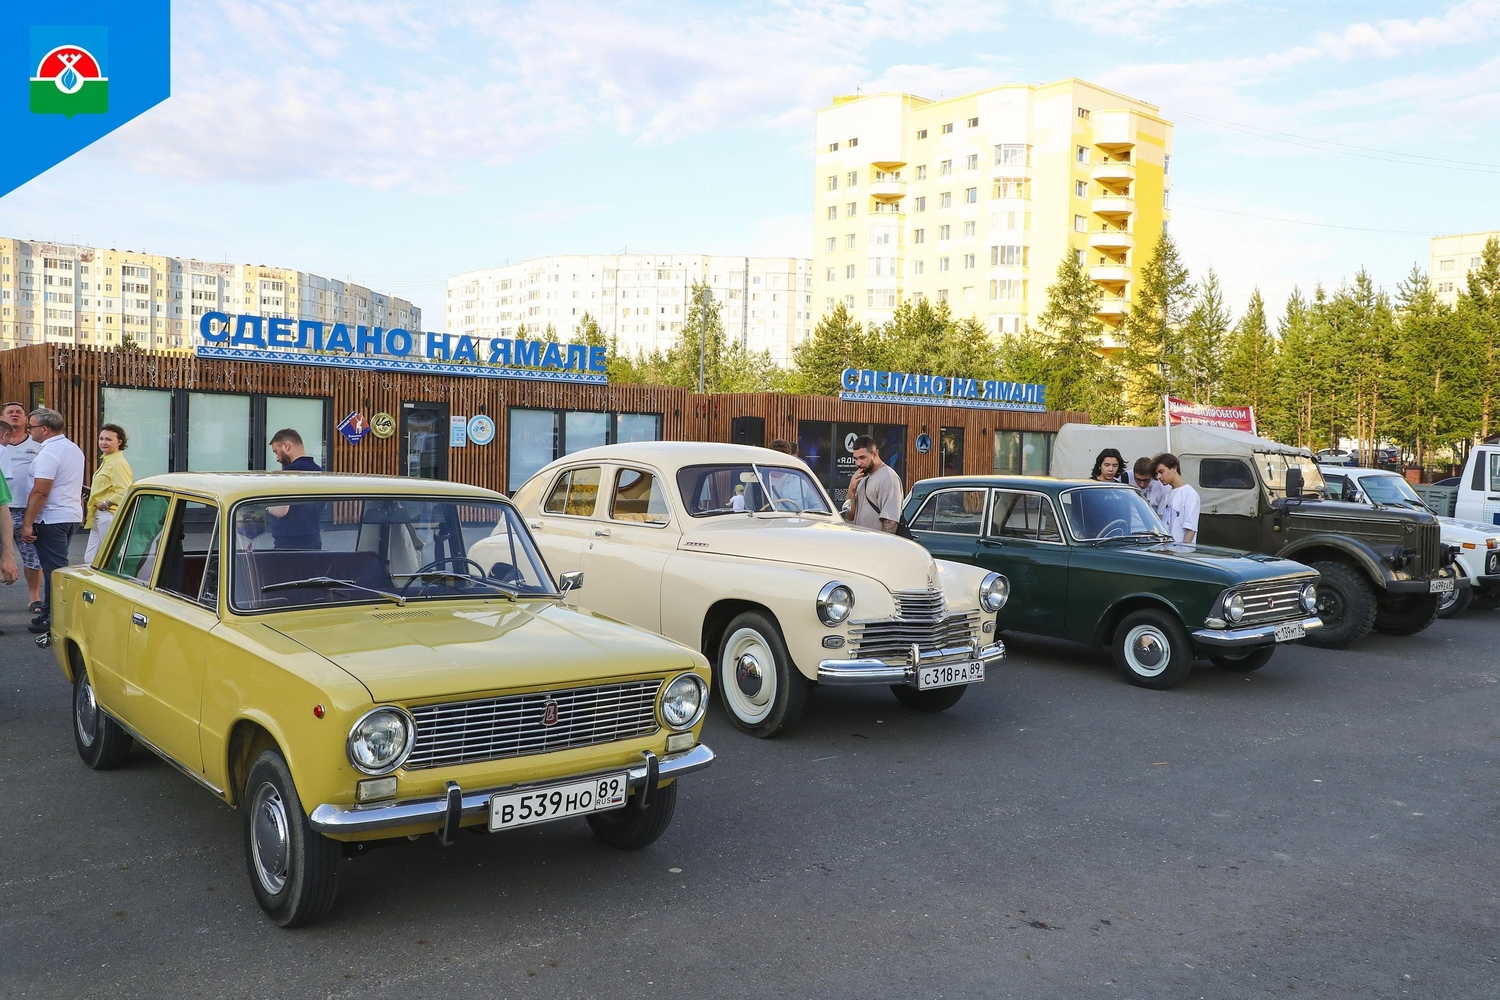 Ретромашины отправились в автопробег по Ямалу: фото раритетных авто